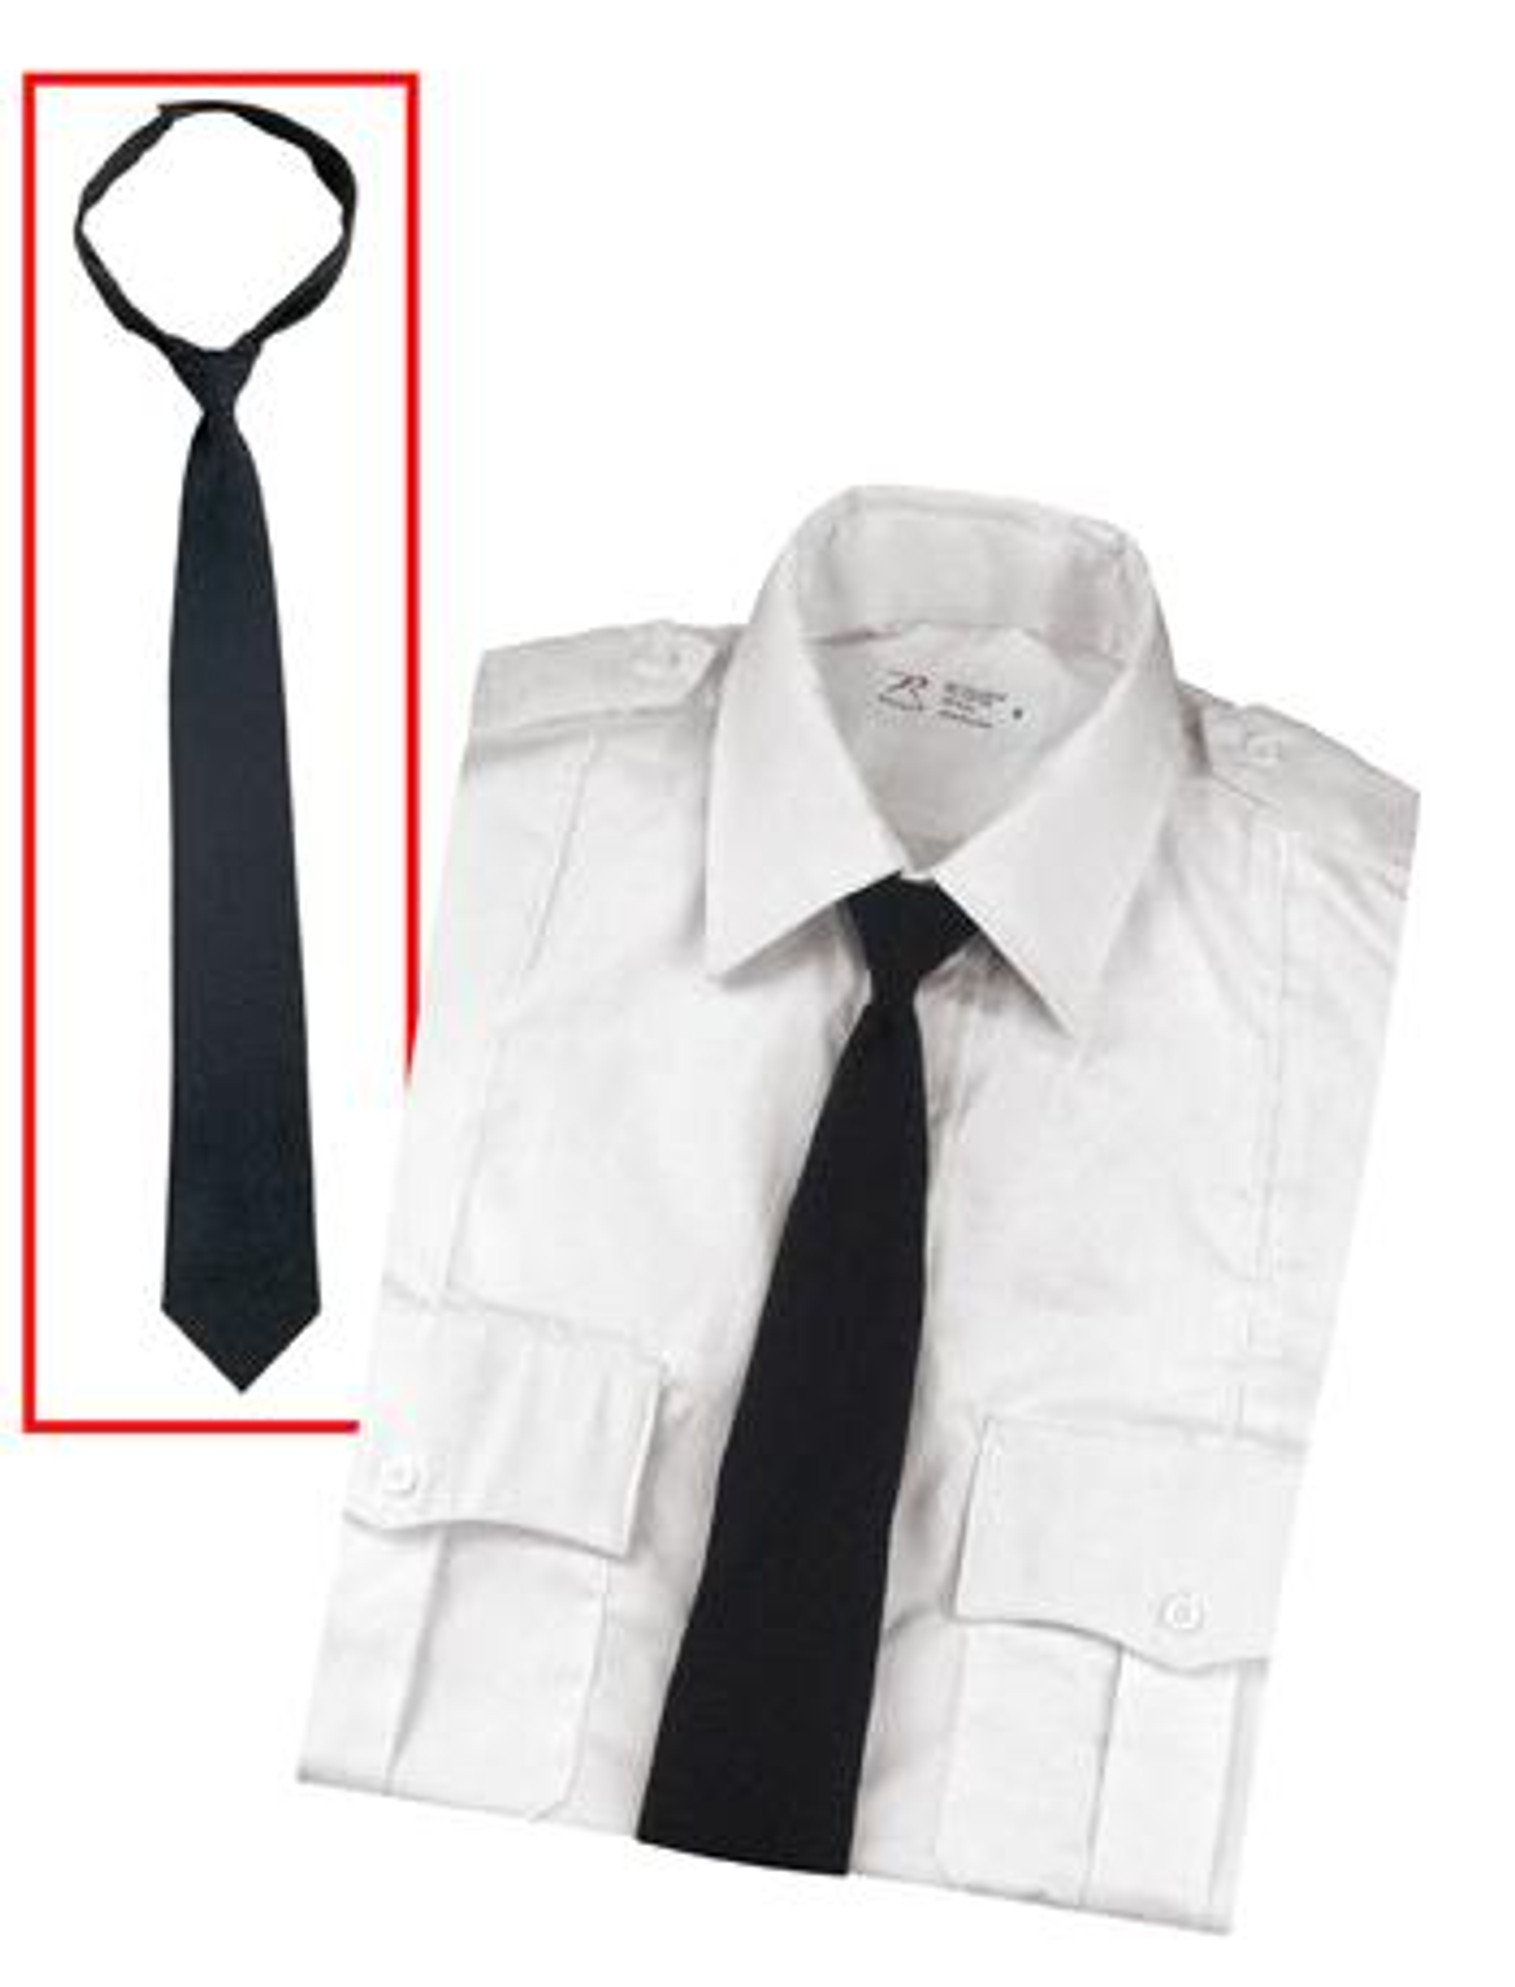 Rothco Police Issue Hook n' Loop Neckties - Black 